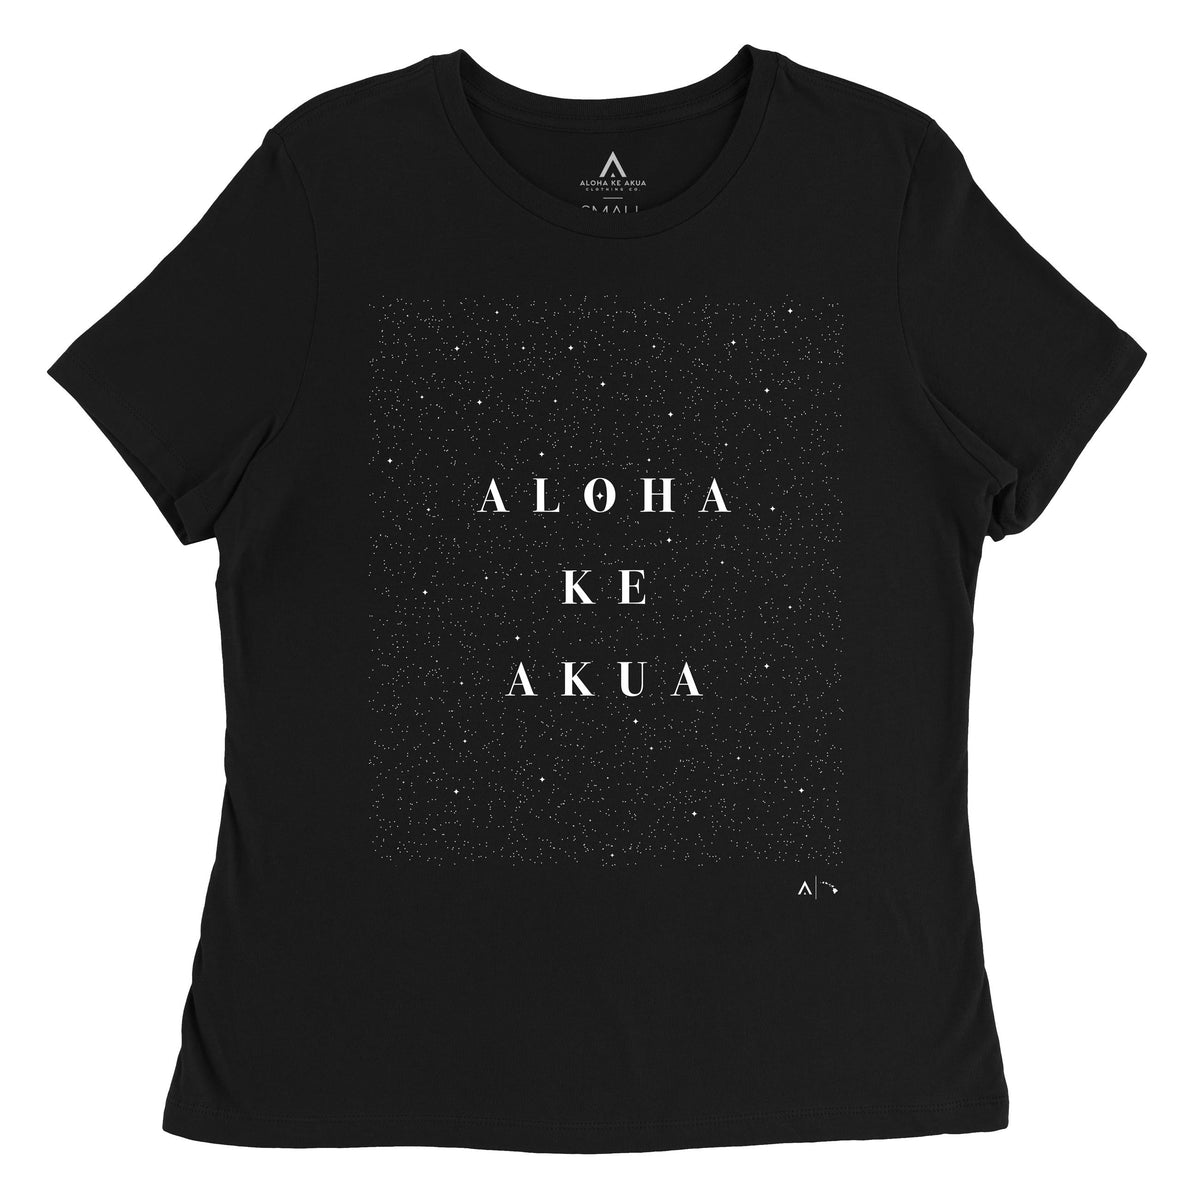 Pop-Up Mākeke - Aloha Ke Akua Clothing - Nāhōkū Women&#39;s Short Sleeve T-Shirt - Black - Front View